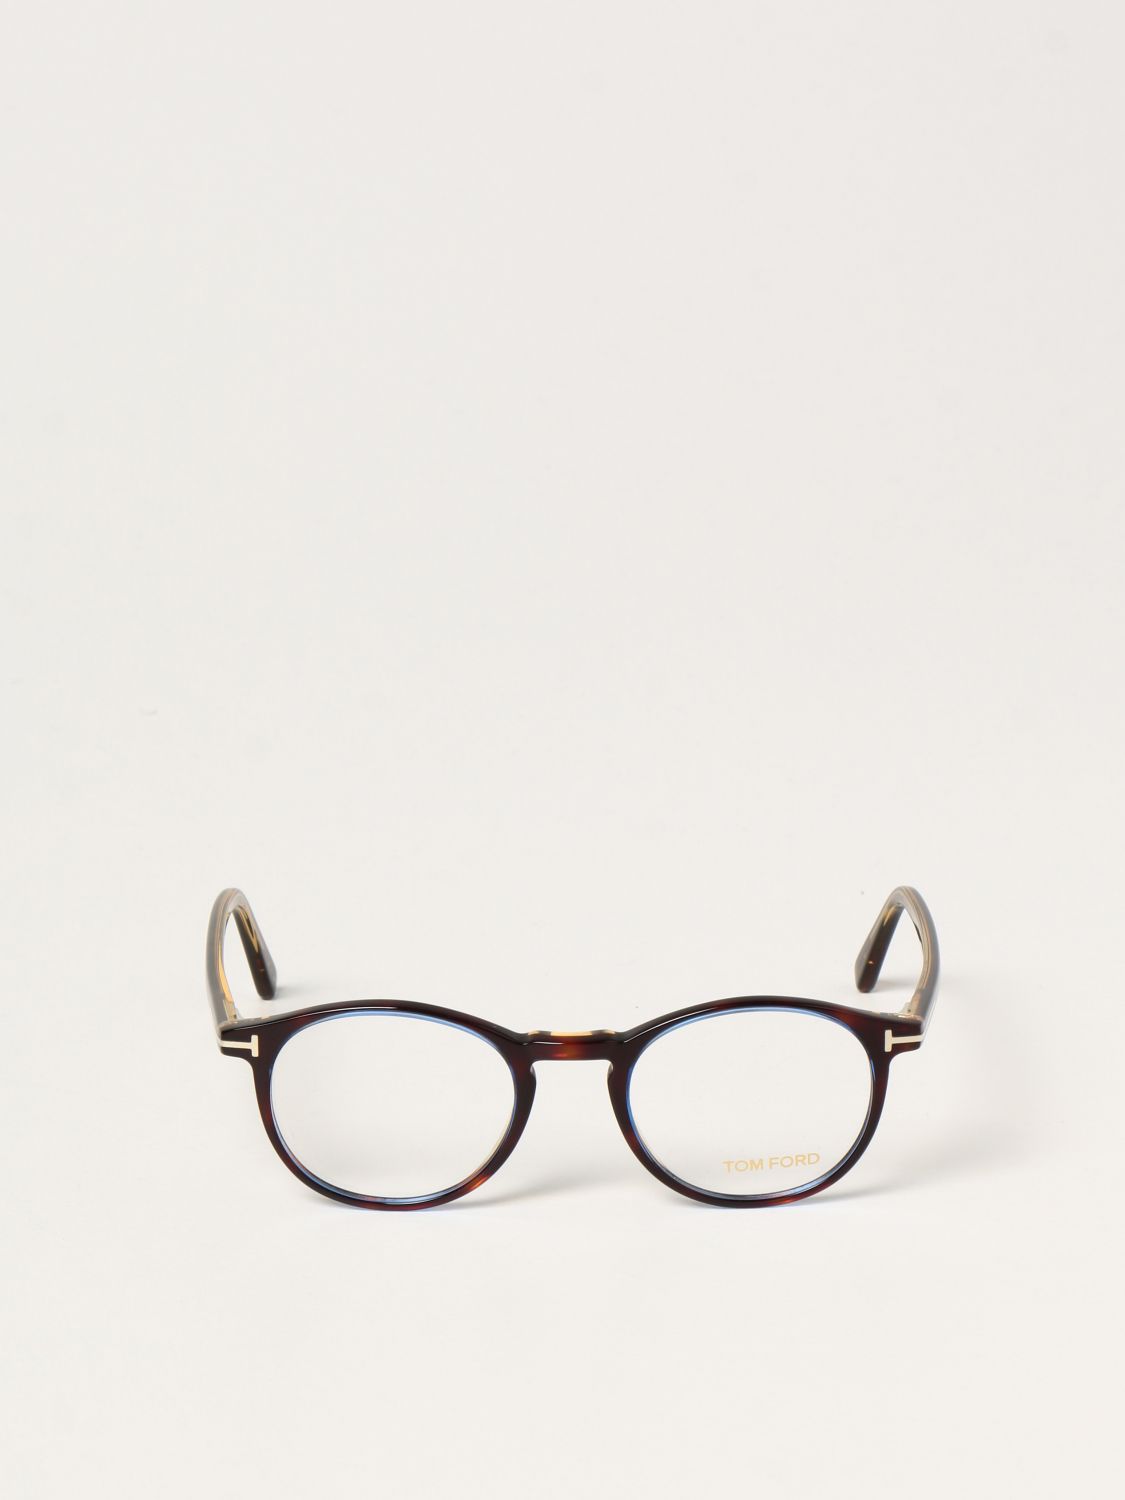 Glasses Tom Ford: Tom Ford acetate eyeglasses blue 2